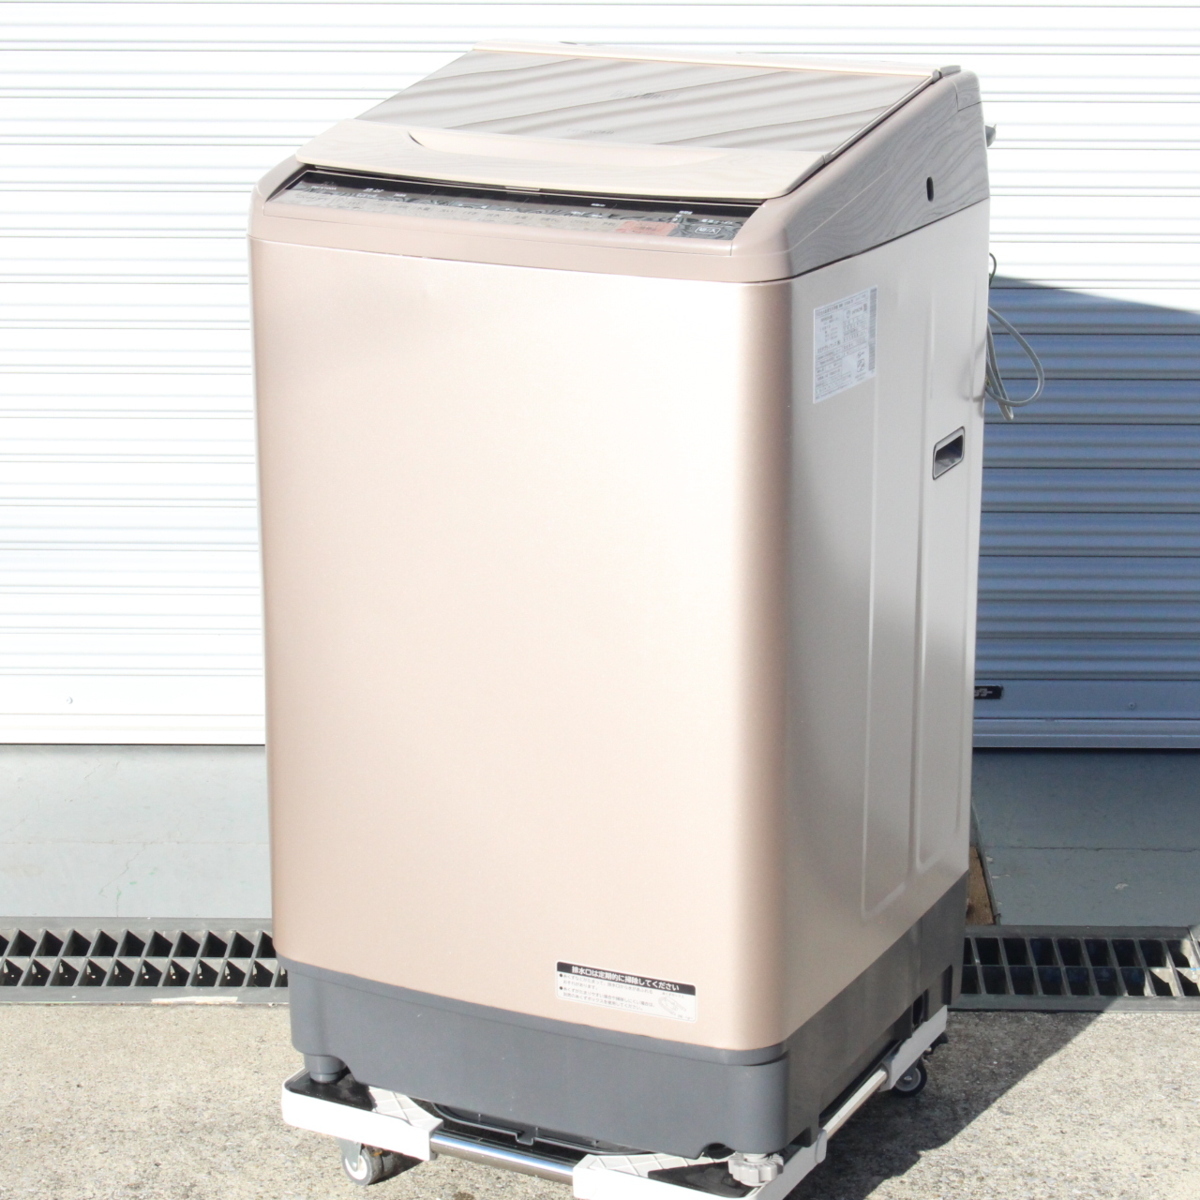 東京都練馬区にて 日立  全自動洗濯機 BW-V100A 2017年製 を出張買取させて頂きました。